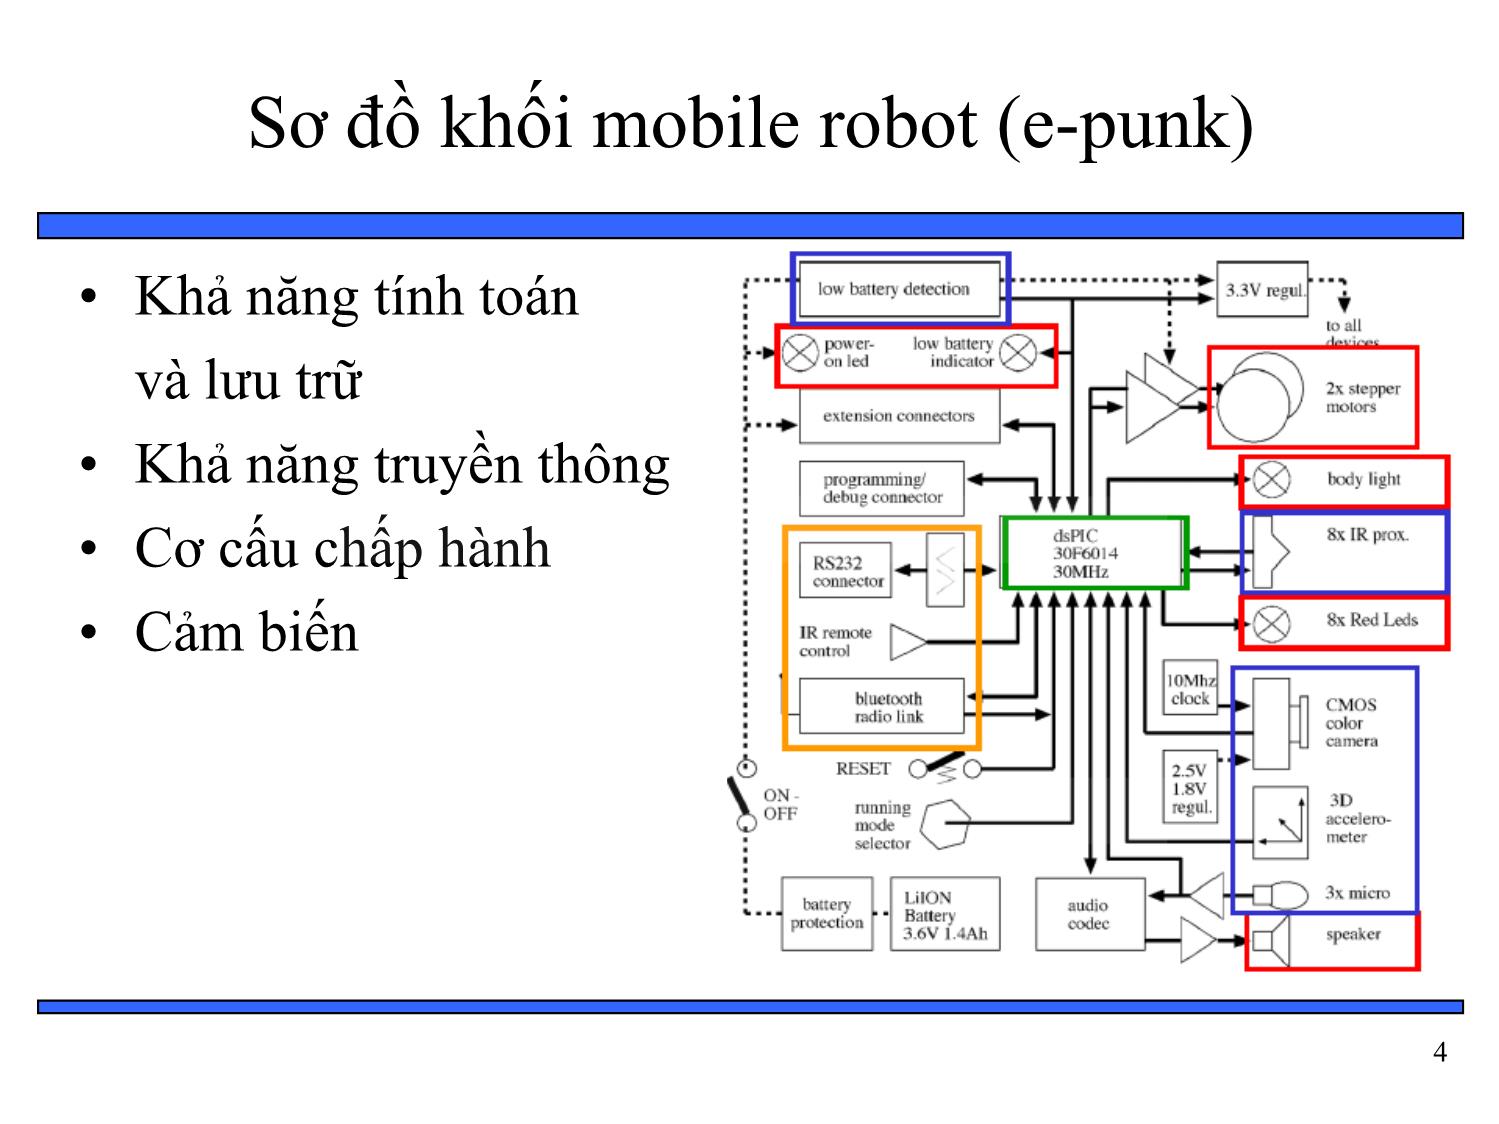 Bài giảng Thiết kế hệ thống nhúng - Chương 6: Tổng hợp phần cứng và phần mềm - Bài 10: Ví dụ về hệ thống nhúng mobile robot trang 4